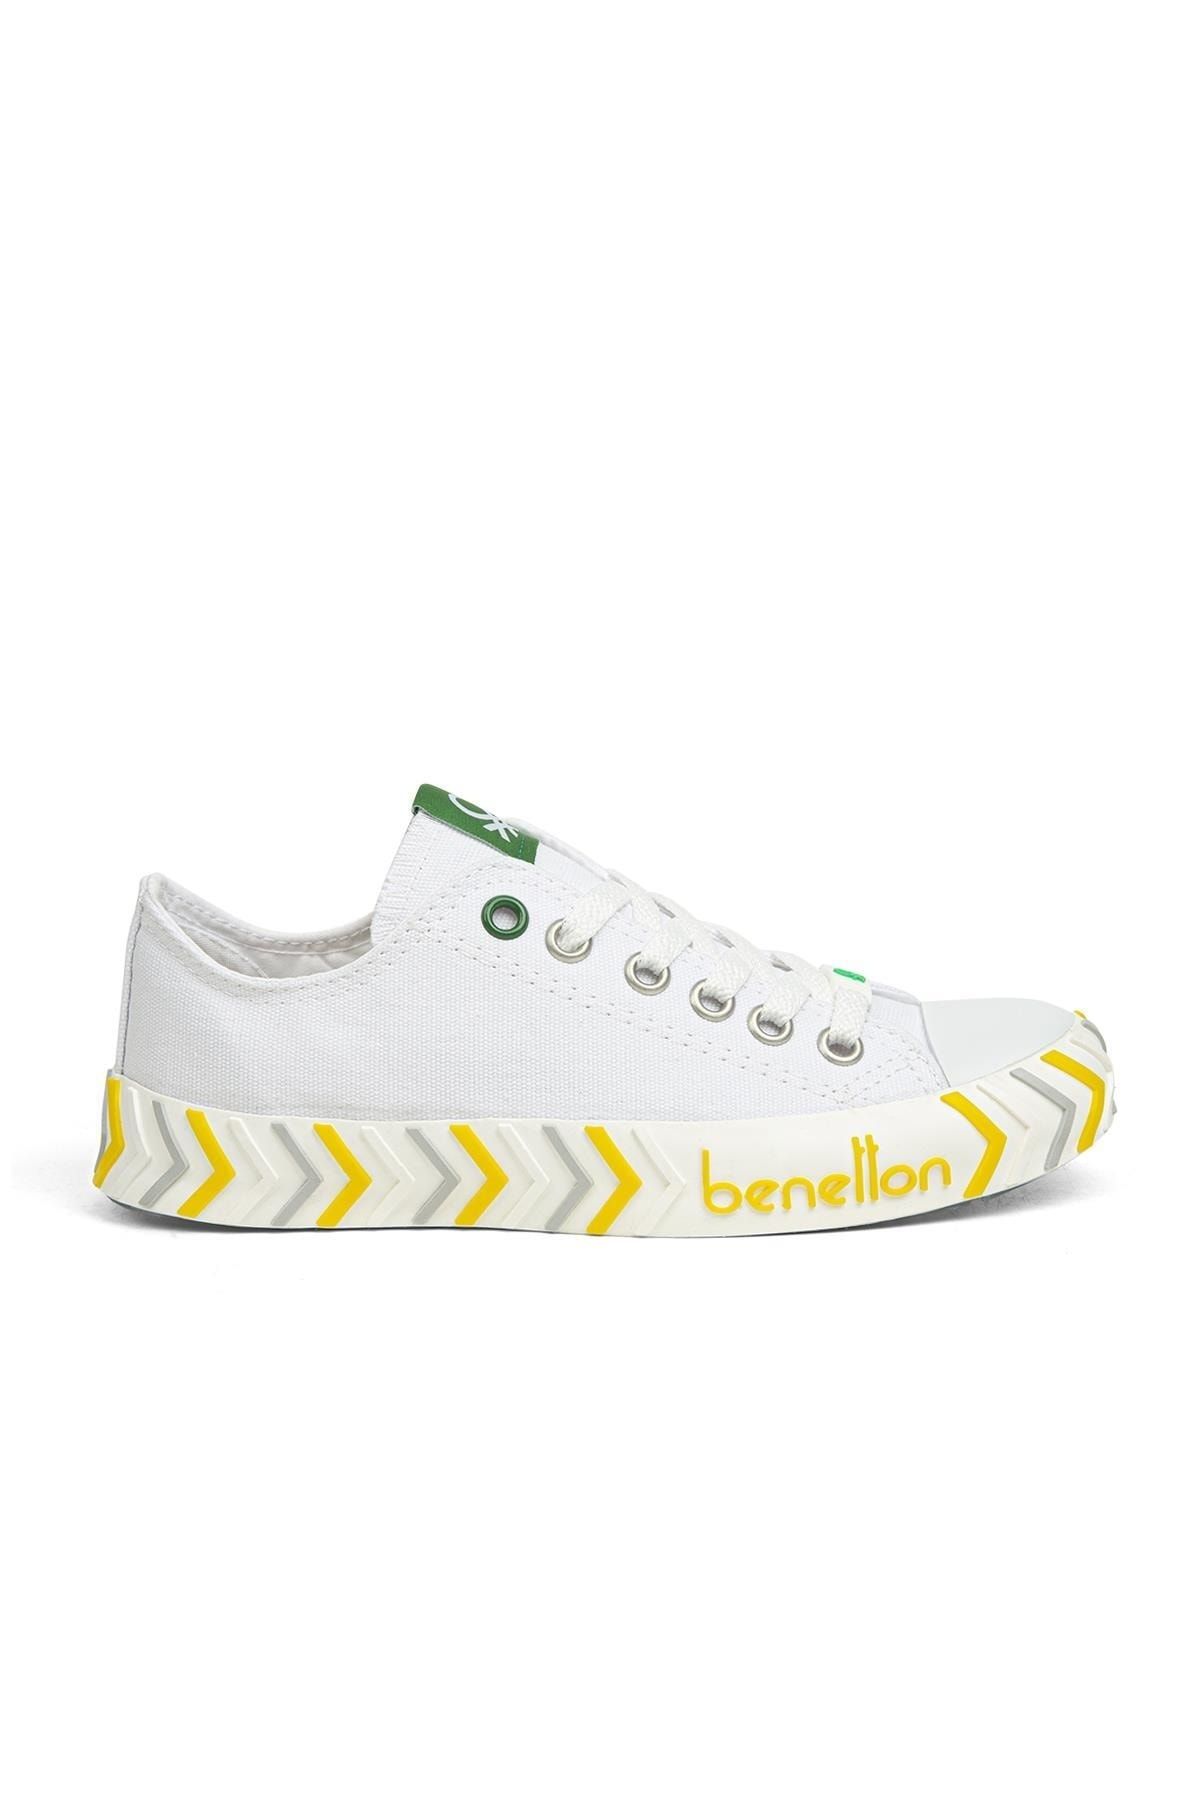 Benetton ® | Bn-30624-3374 Beyaz Sarı - Kadın Spor Ayakkabı